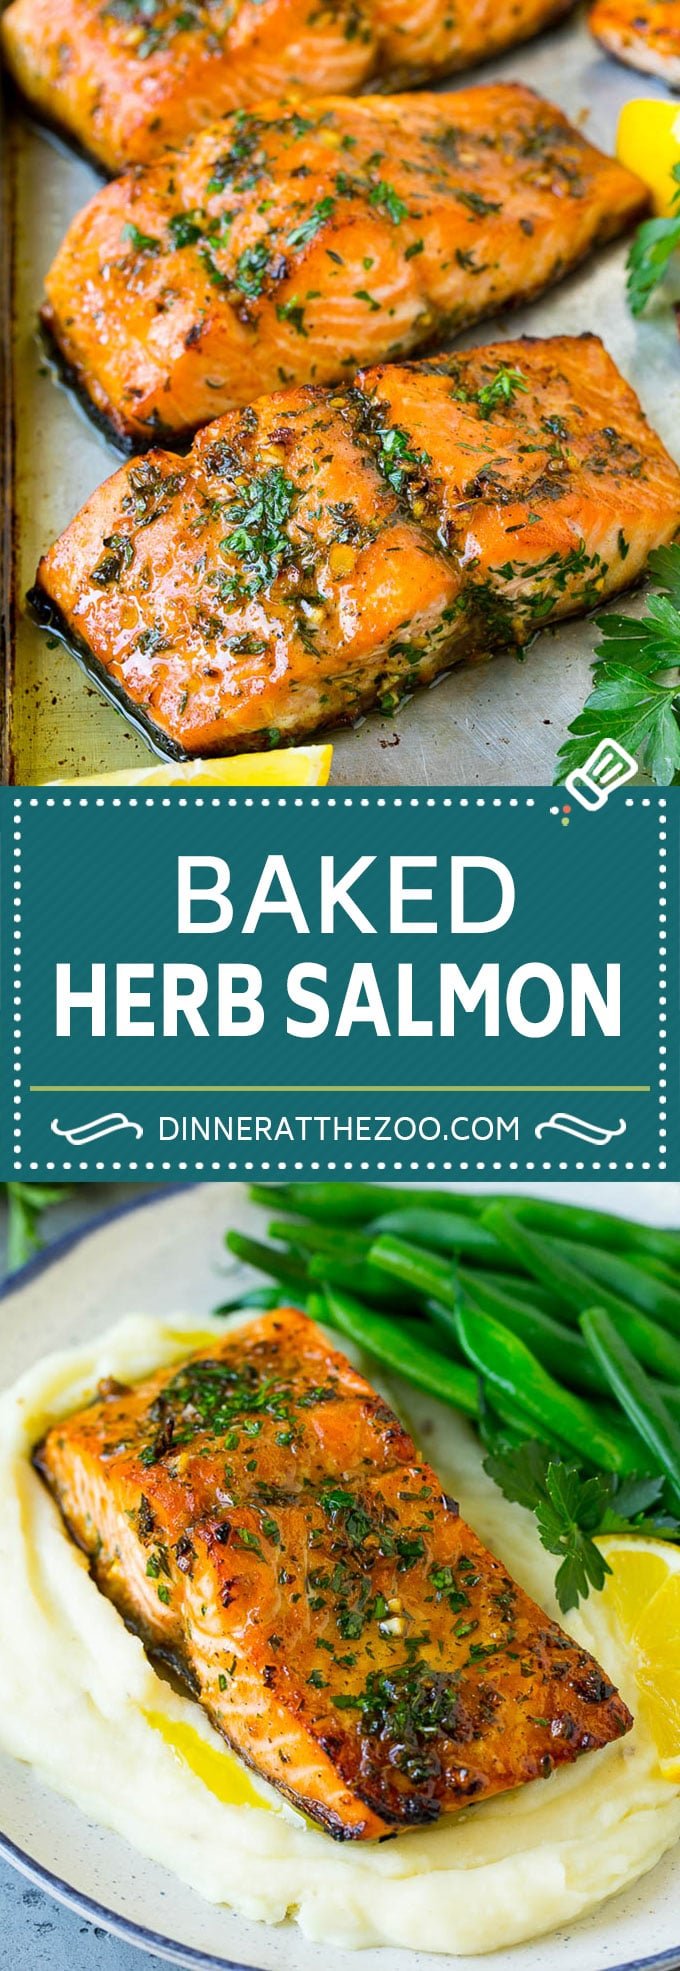 Baked Salmon Recipe | Garlic Salmon | Roasted Salmon #salmon #seafood #fish #dinner #dinneratthezoo